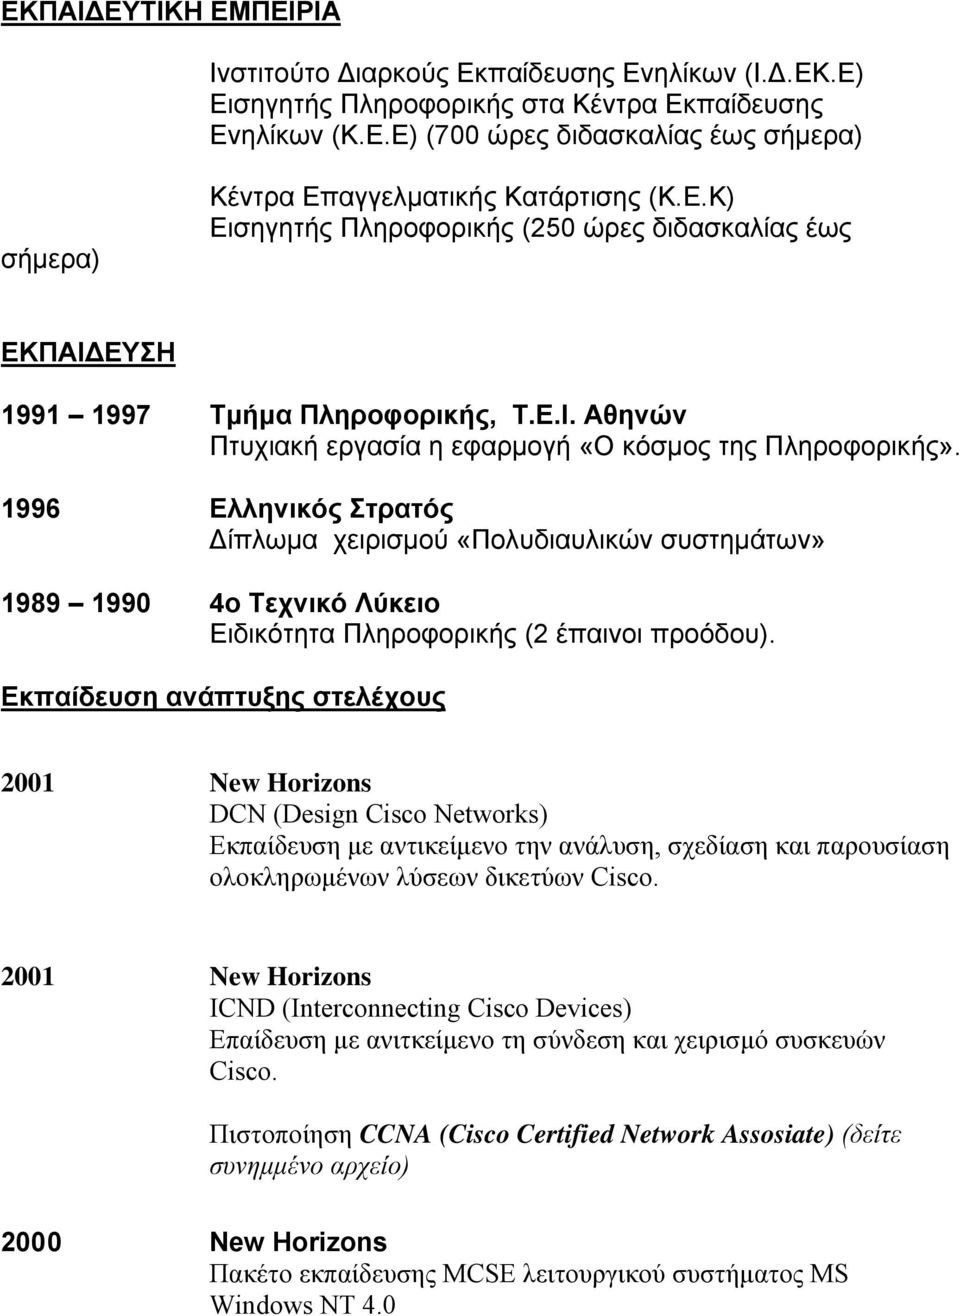 1996 Ελληνικός Στρατός Δίπλωμα χειρισμού «Πολυδιαυλικών συστημάτων» 1989 1990 4ο Τεχνικό Λύκειο Ειδικότητα Πληροφορικής (2 έπαινοι προόδου).